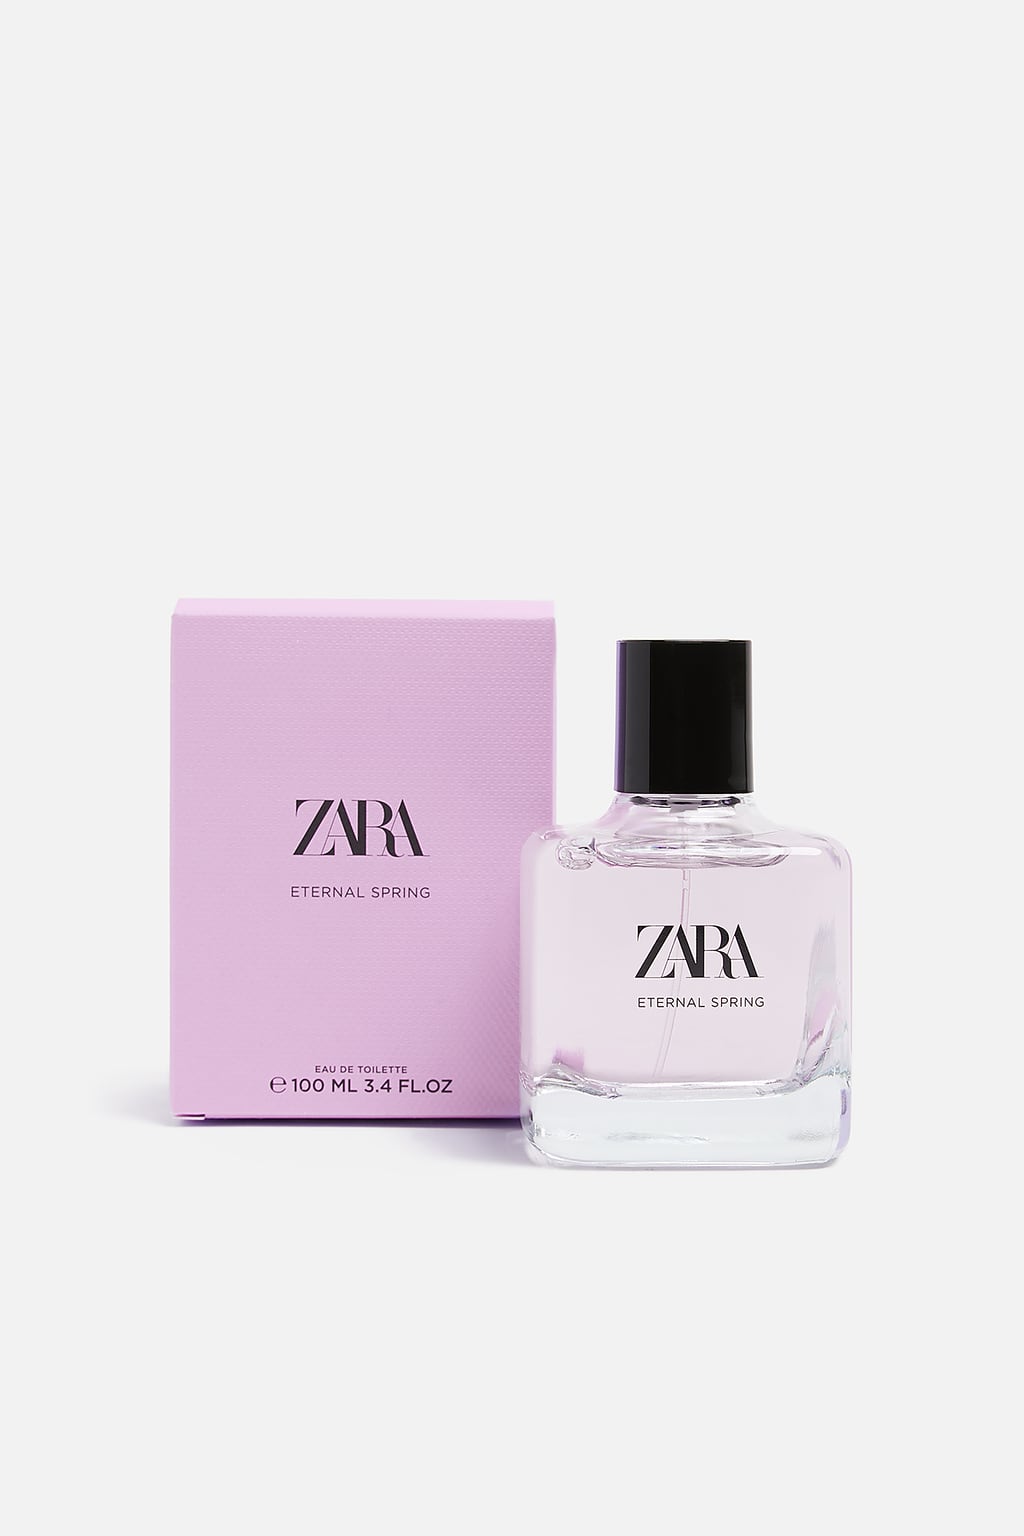 Eternal Spring Zara parfum - un nouveau parfum pour femme 2019